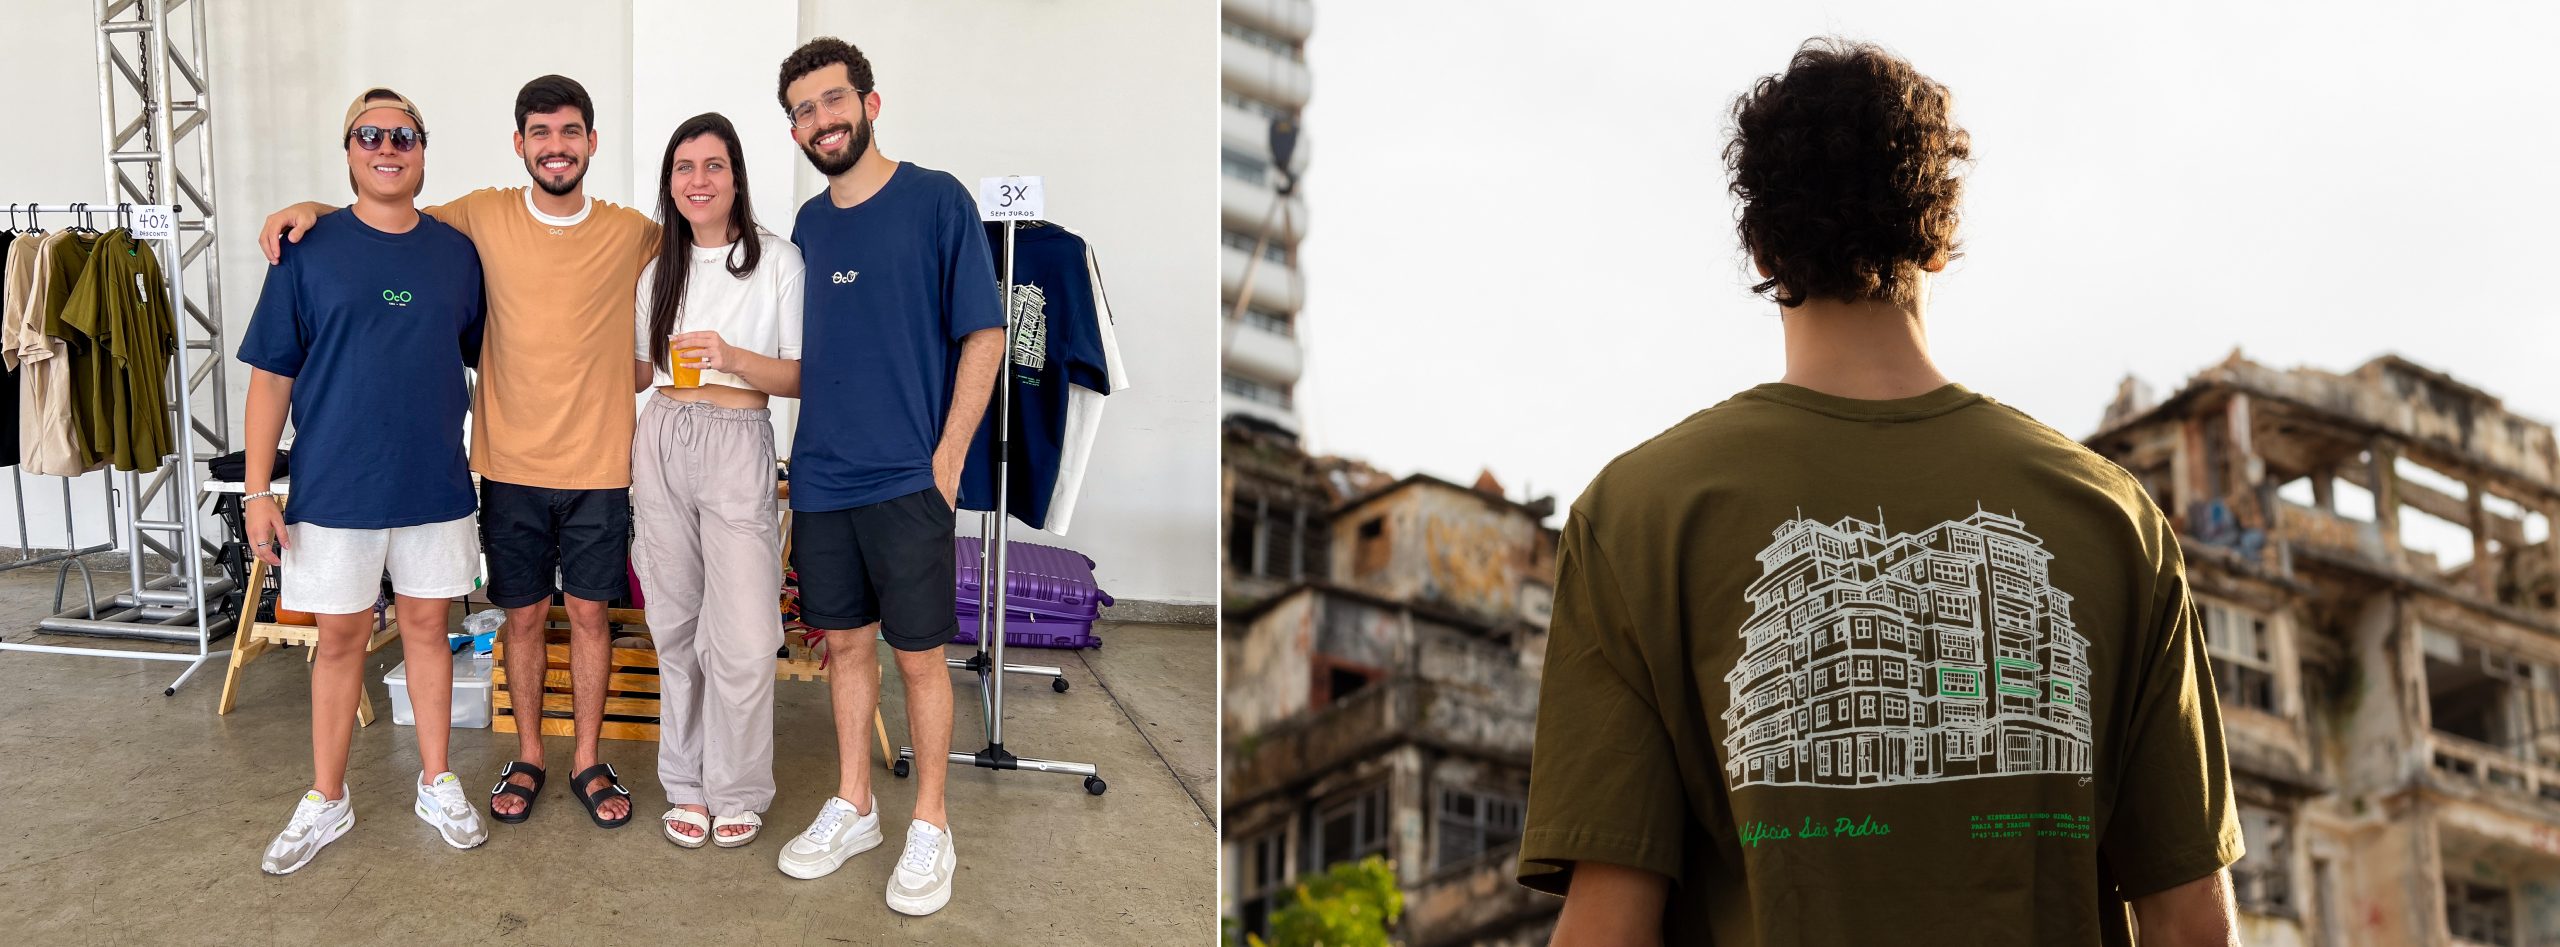 Rolês de Fortaleza inspira coleção de camisetas que será lançada neste sábado (11) no Esquina Brasil